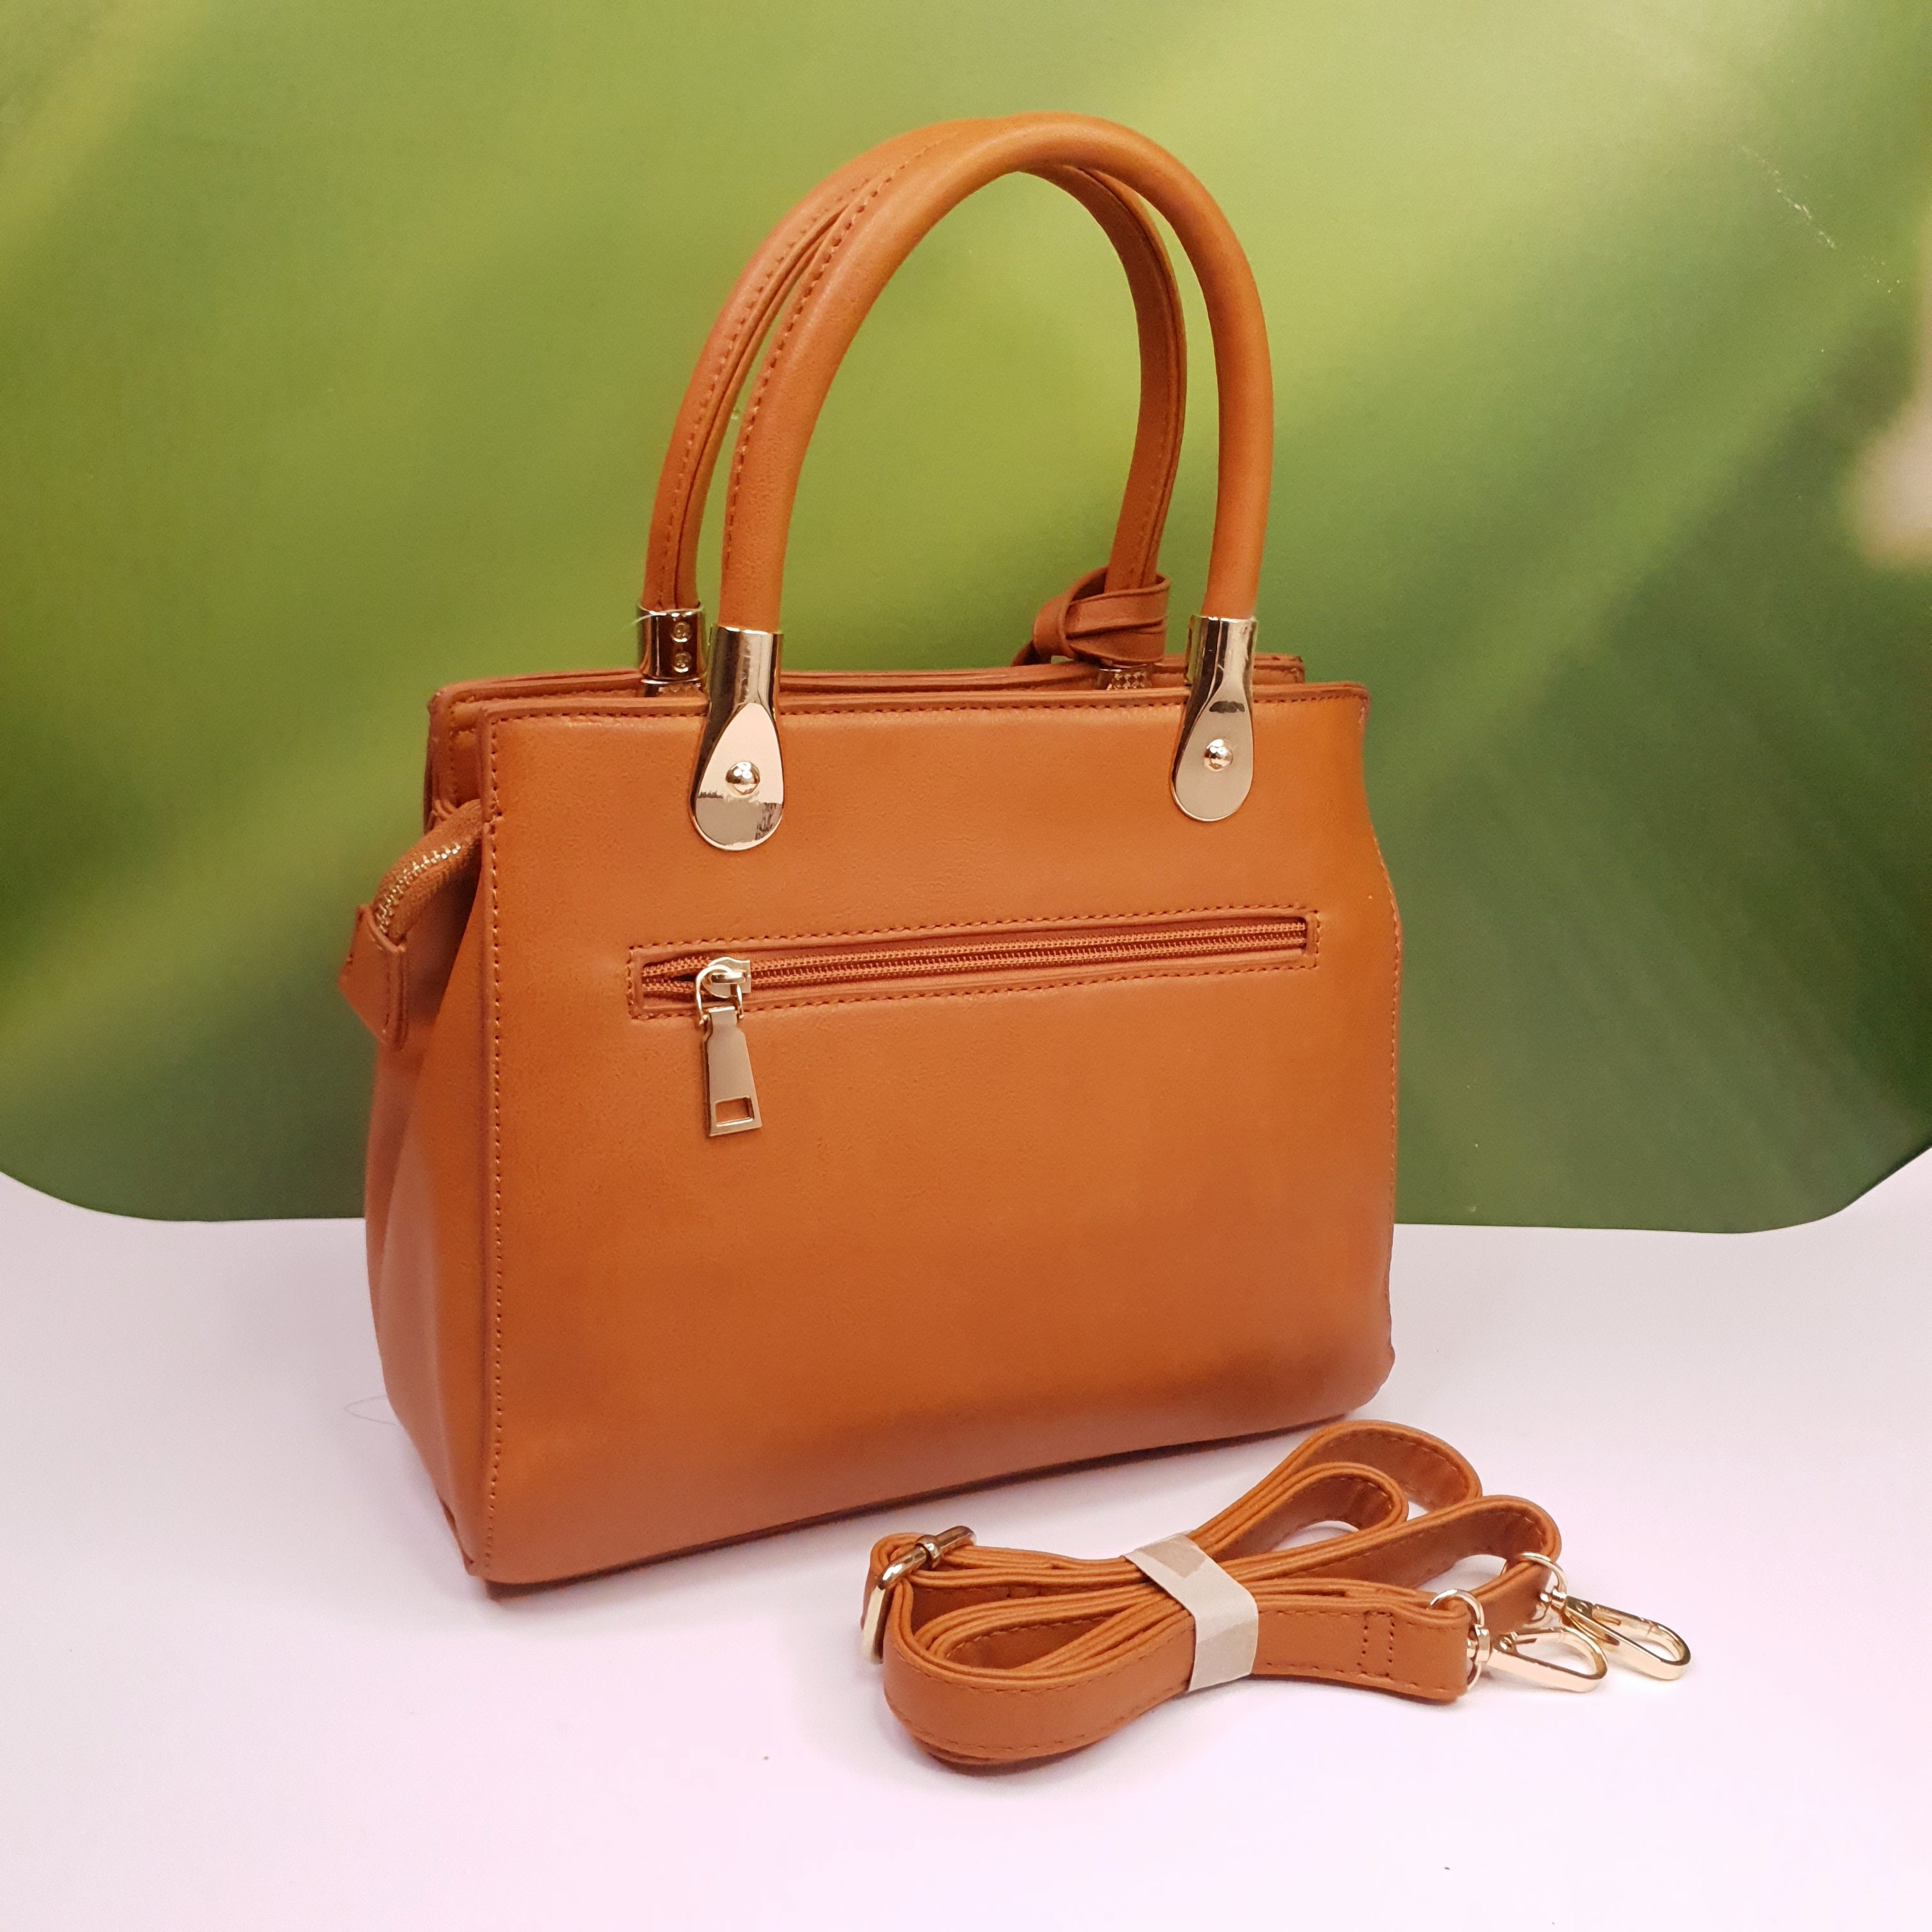 Women Casual Handbags - Maha fashions -  women's handbags